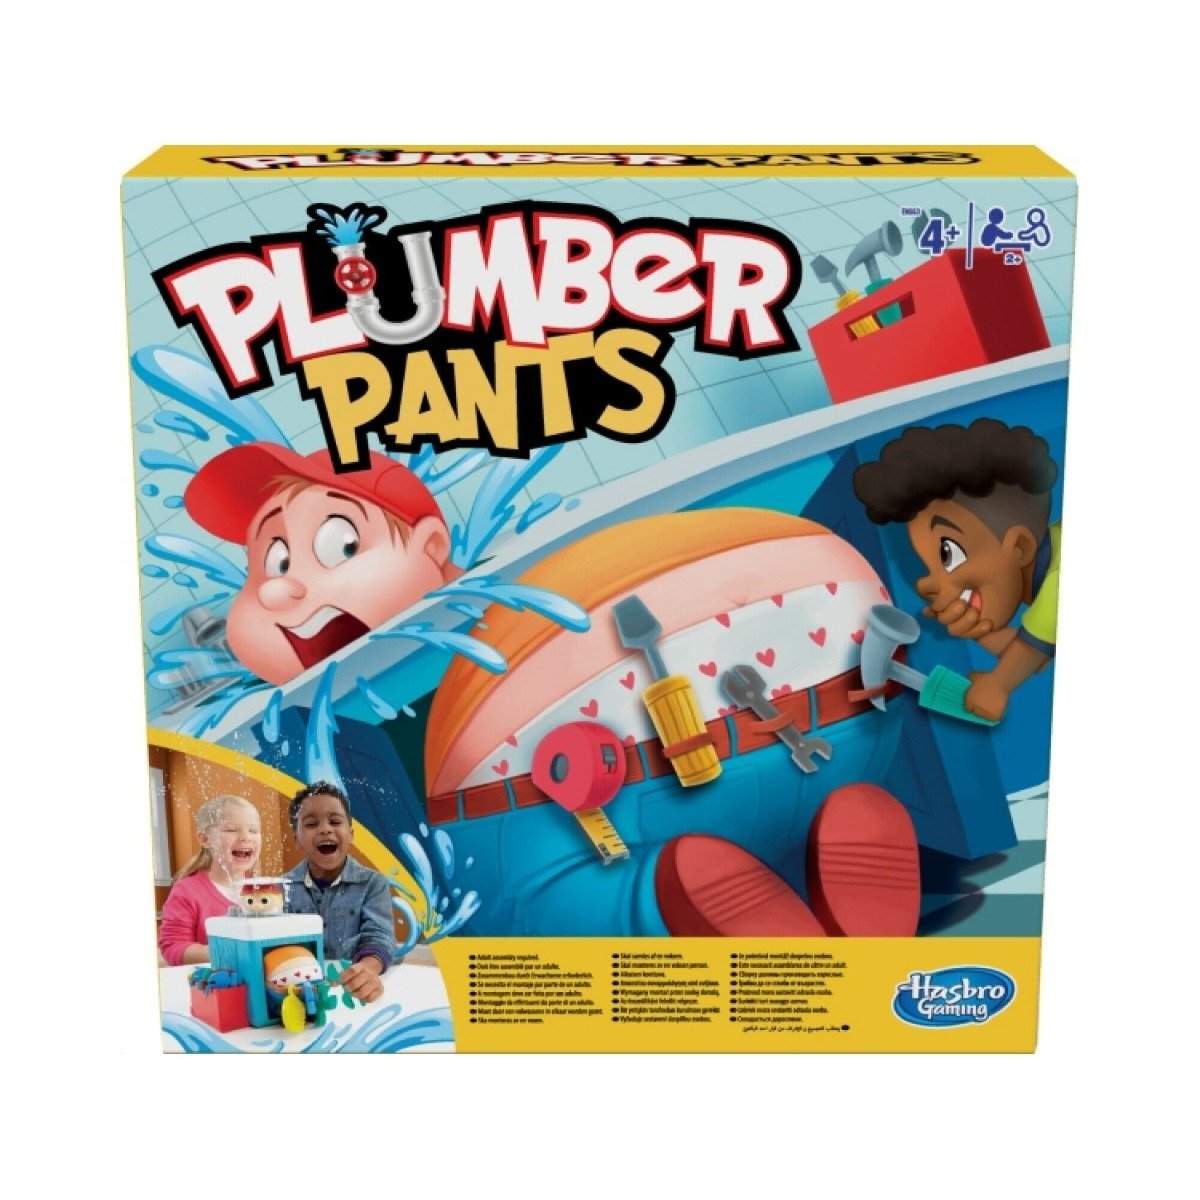 Joc Plumber Pants Hasbro Games imagine 2022